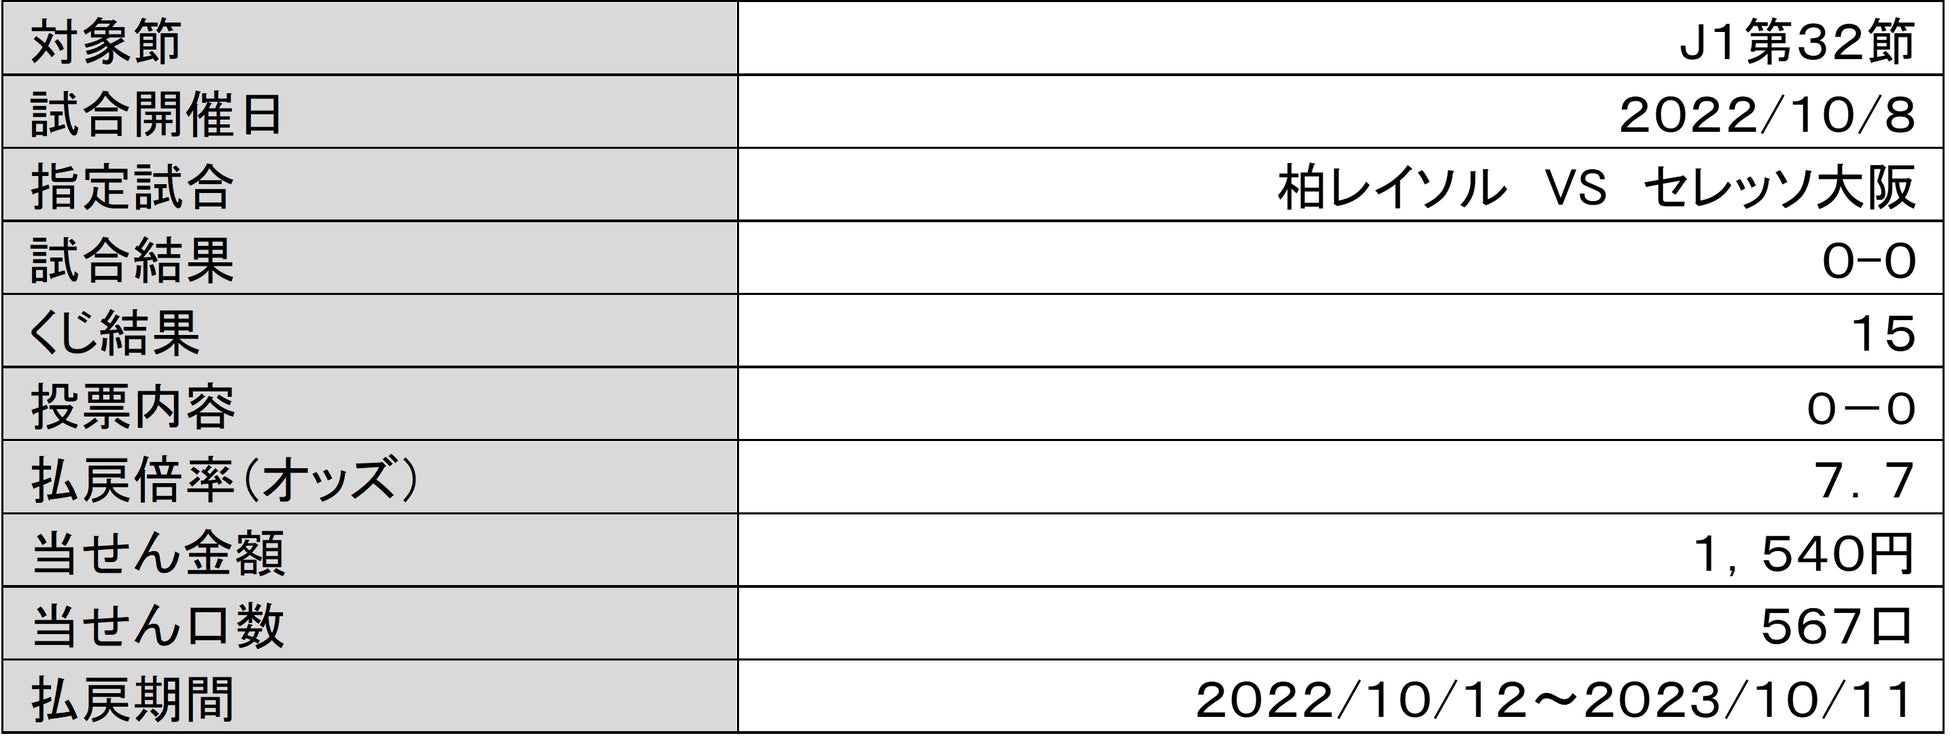 ノジマTリーグ 2022-2023シーズン 公式戦 10月9日開催 岡山リベッツ vs 琉球アスティーダ　試合結果